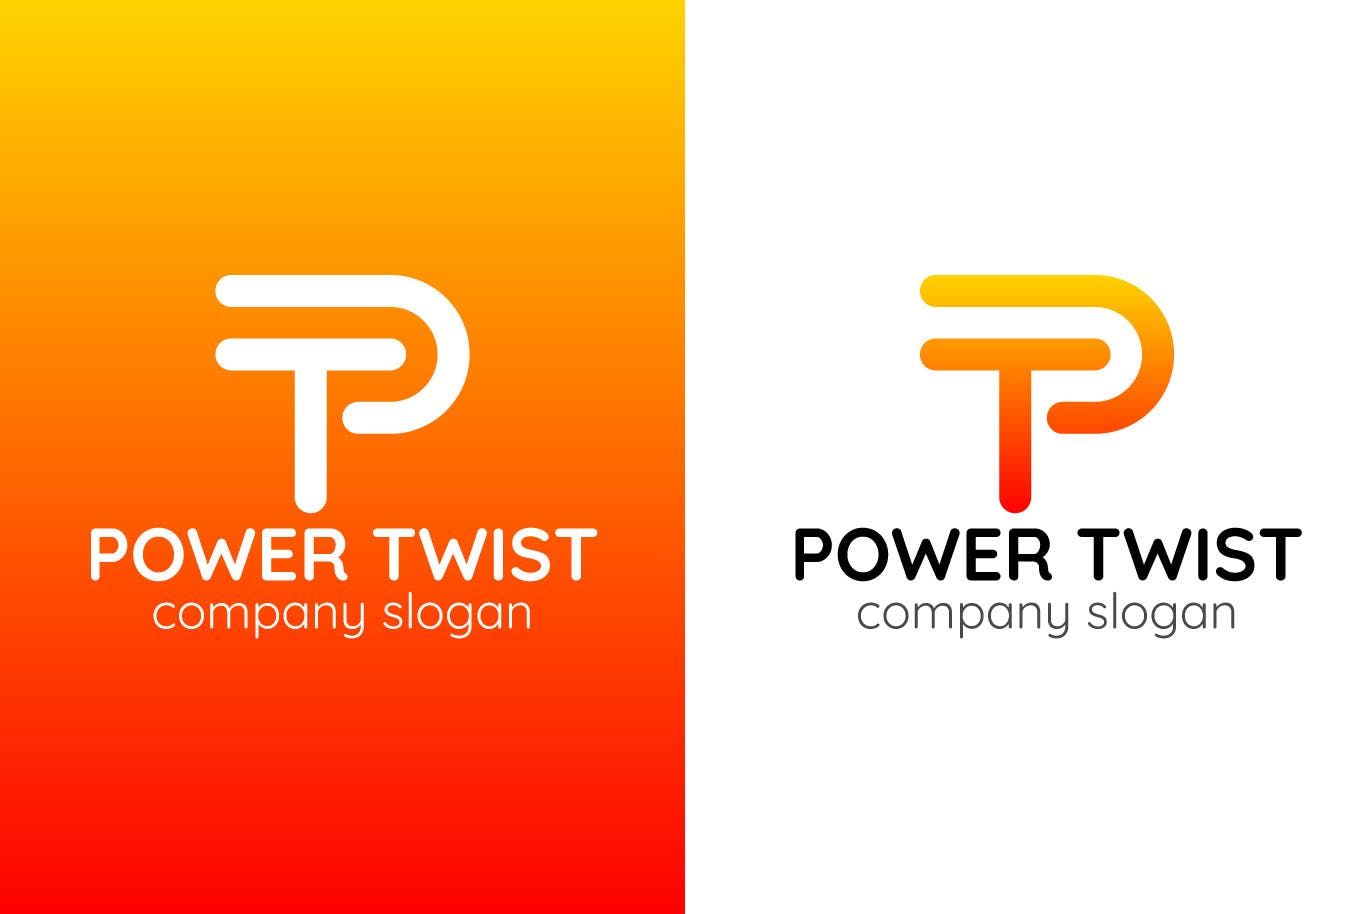 P字母图形创意Logo设计第一素材精选模板 Power Twist Creative Logo Template插图(1)